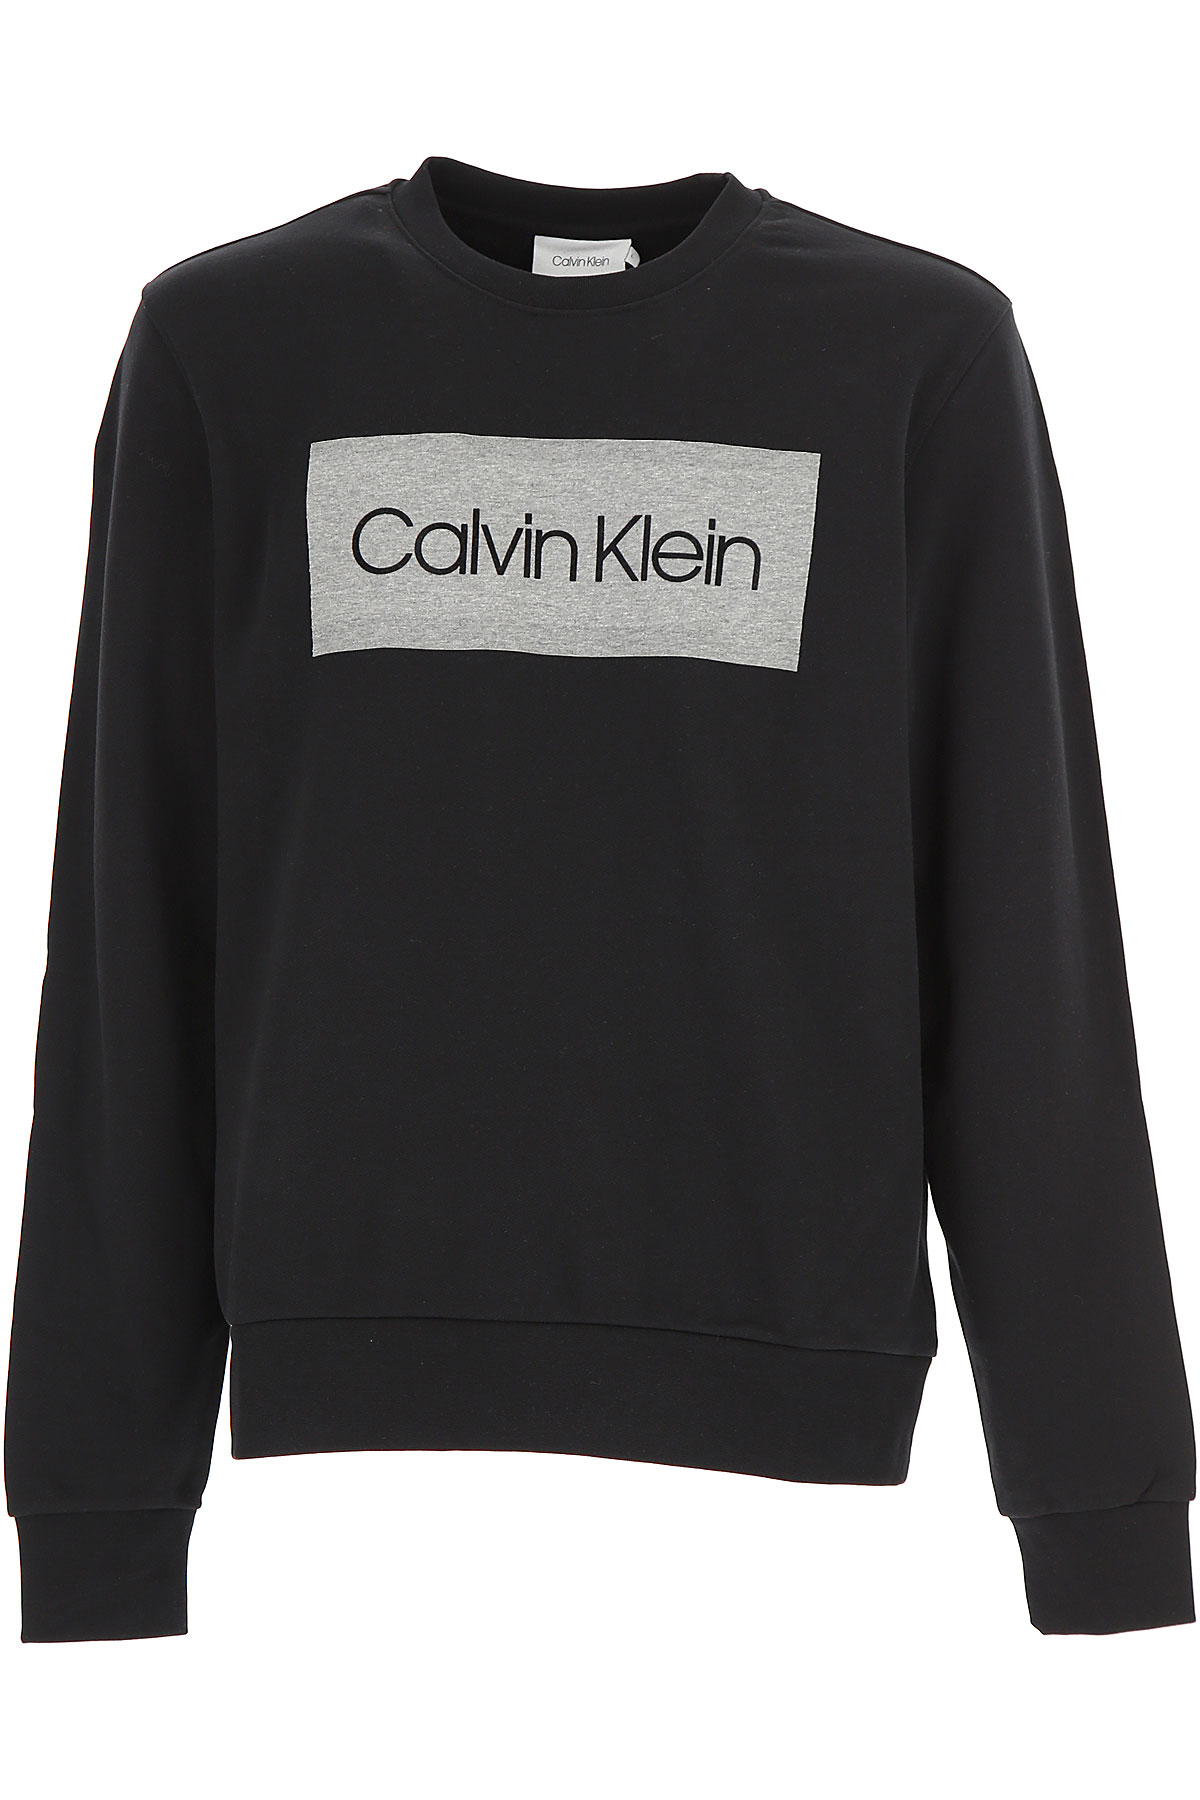 Calvin Klein Sweatshirt für Herren, Kapuzenpulli, Hoodie, Sweats Günstig im Outlet Sale, Schwarz, Baumwolle, 2017, L XL